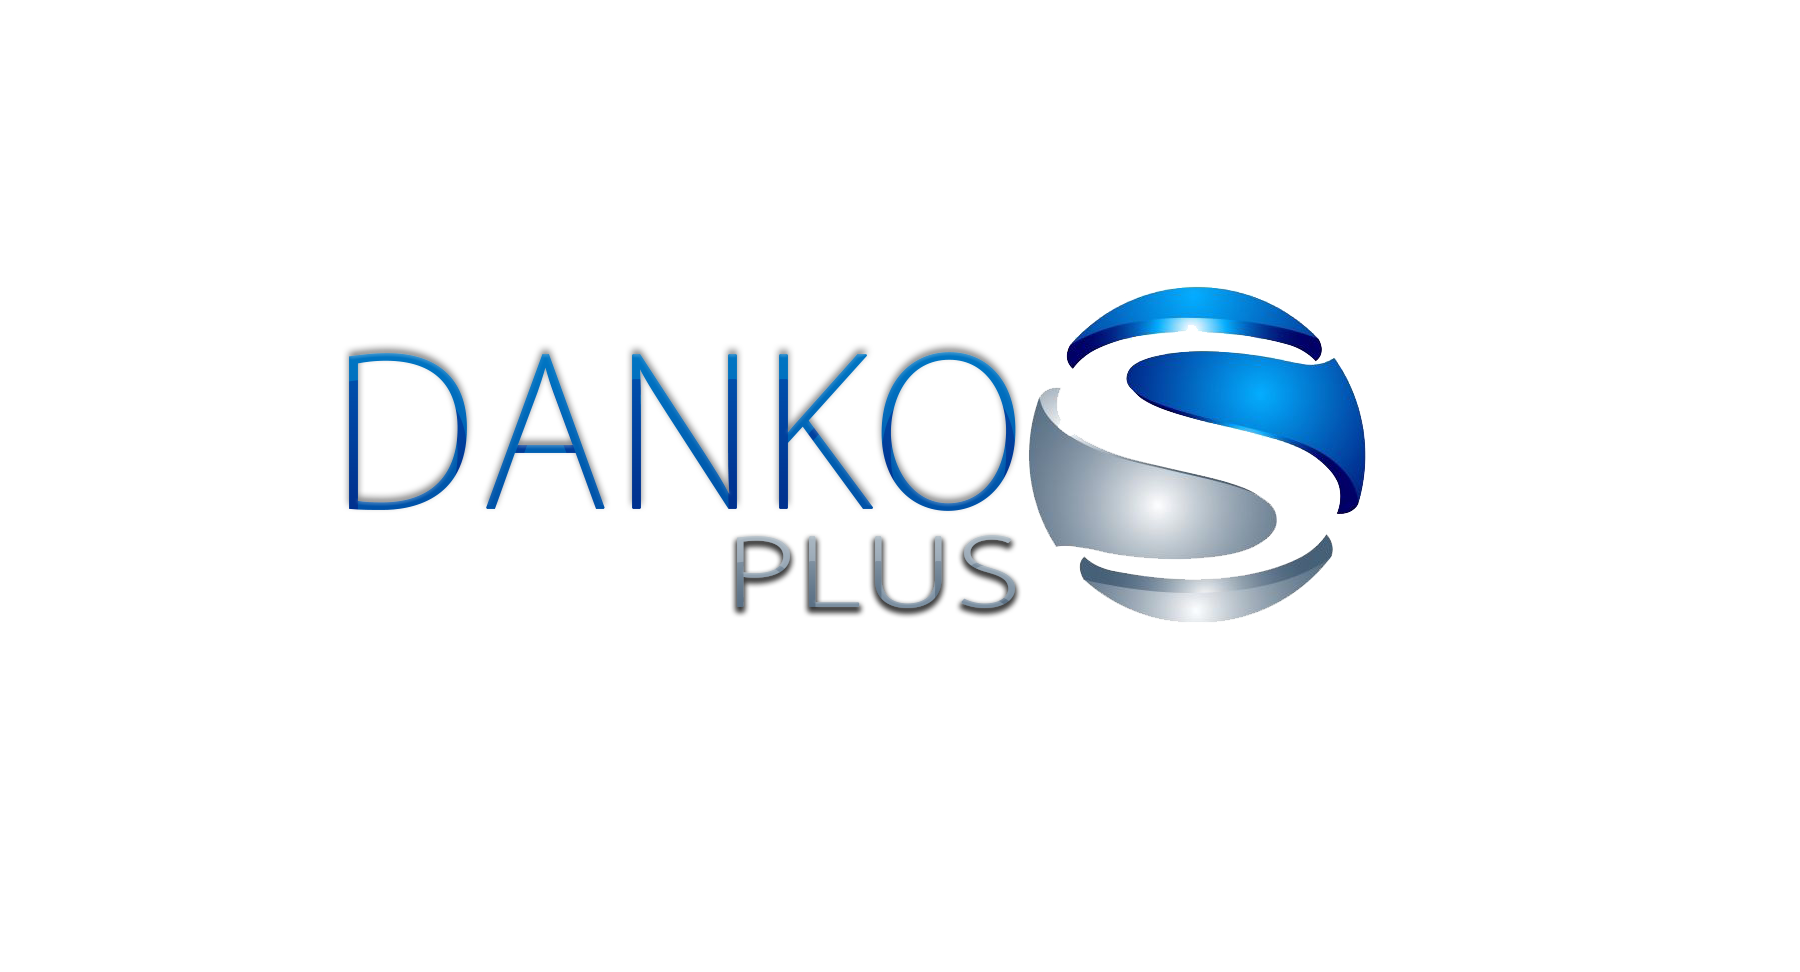 Dankos Plus